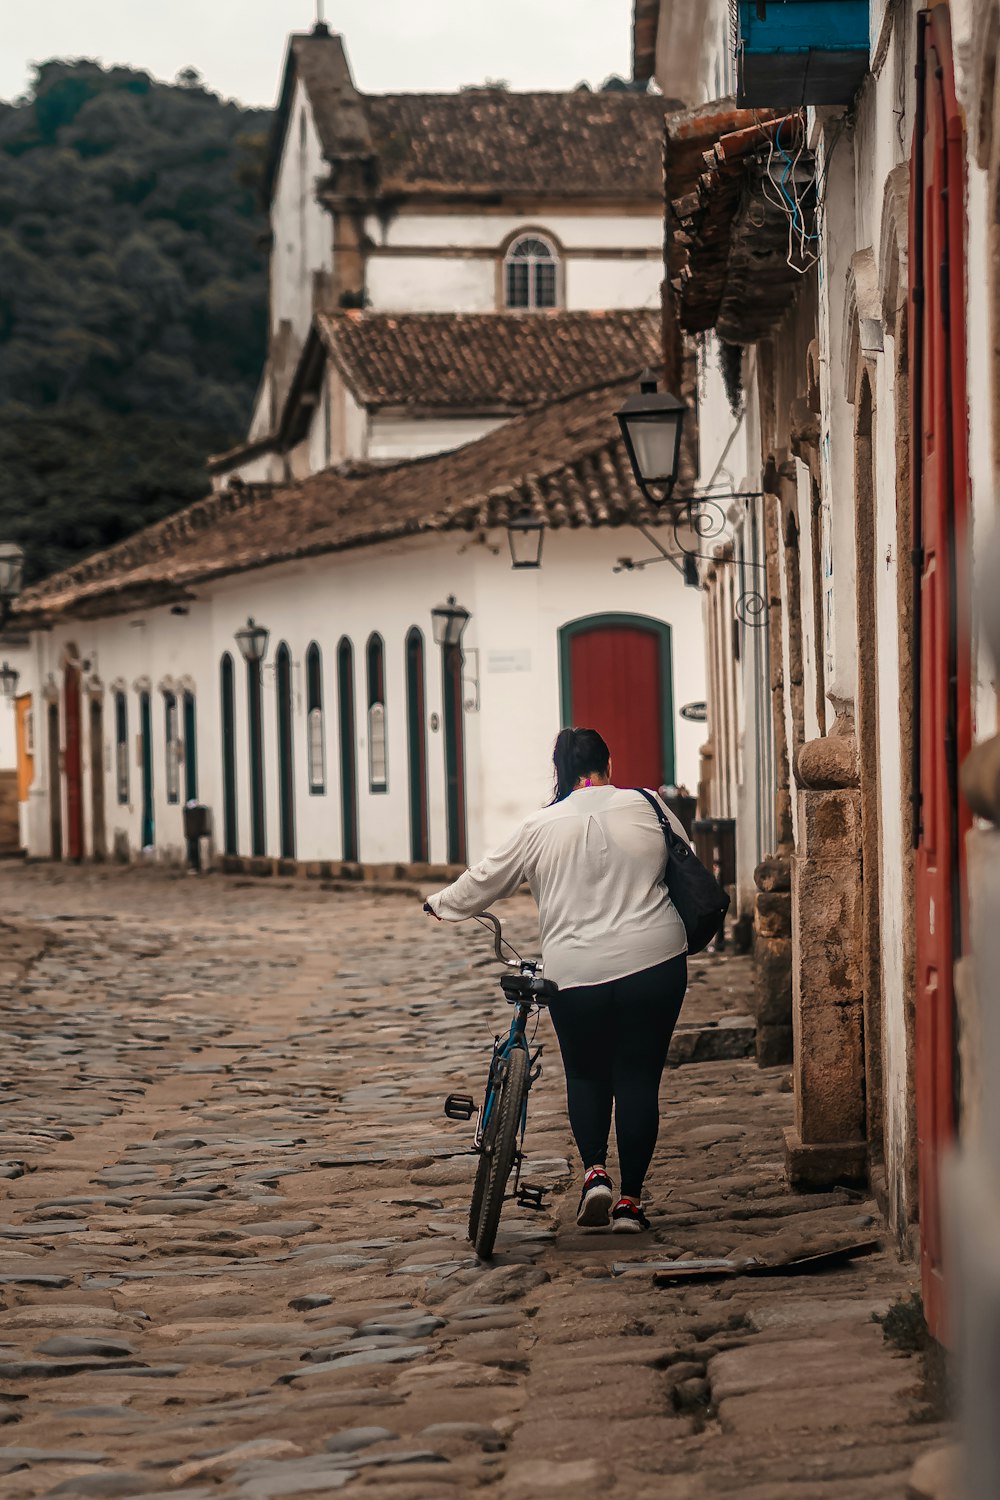 uma mulher que caminha uma bicicleta por uma rua de paralelepípedos